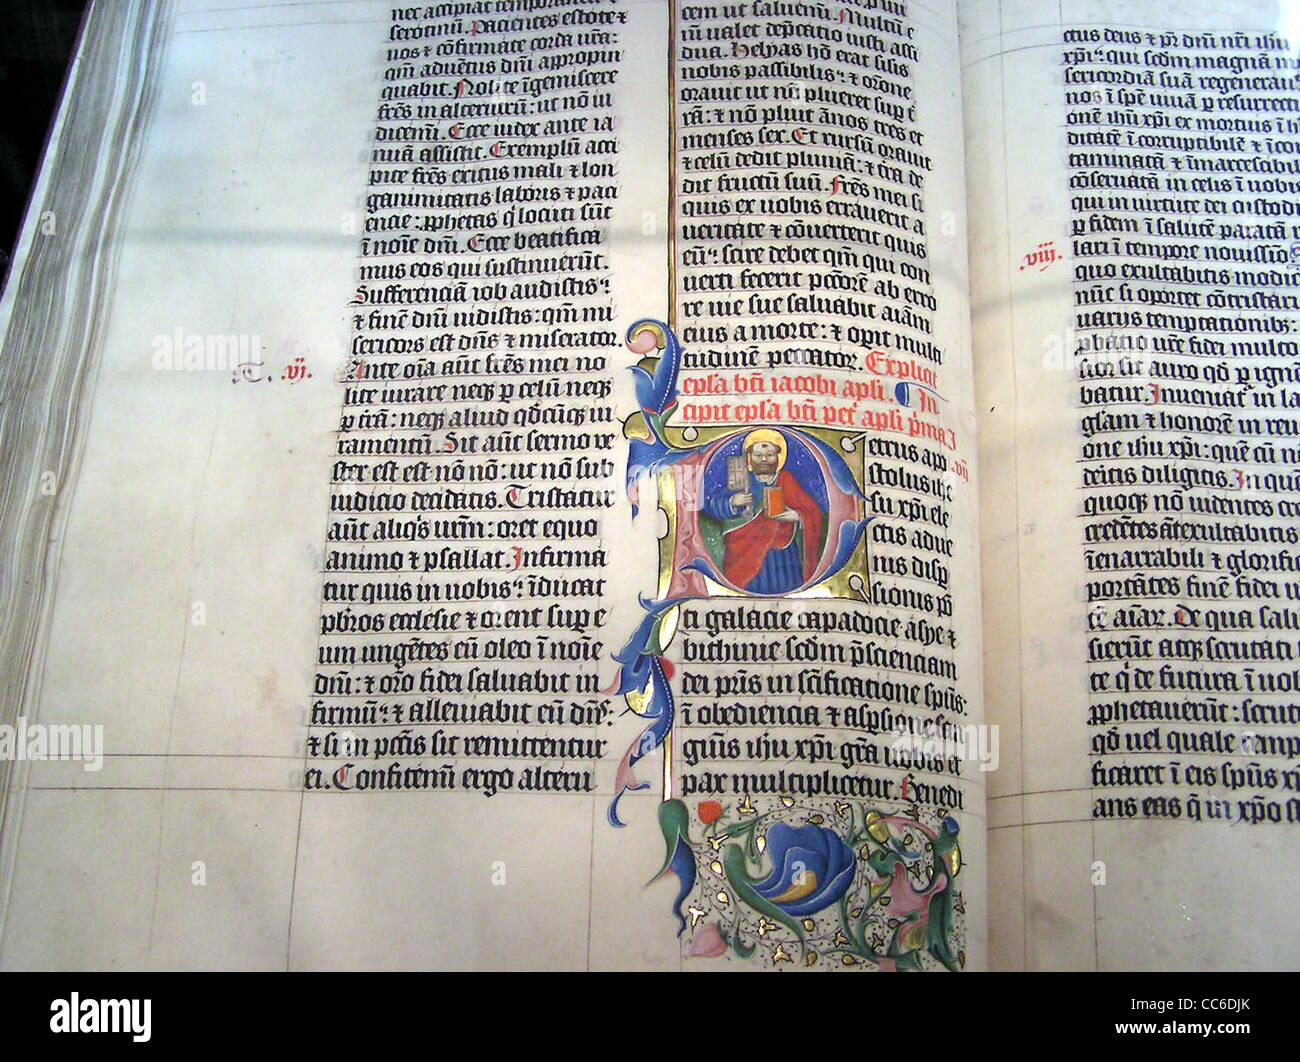 Letras iluminadas en una Biblia latina de 1407AD en la pantalla de la Abadía de Malmesbury, Foto de stock